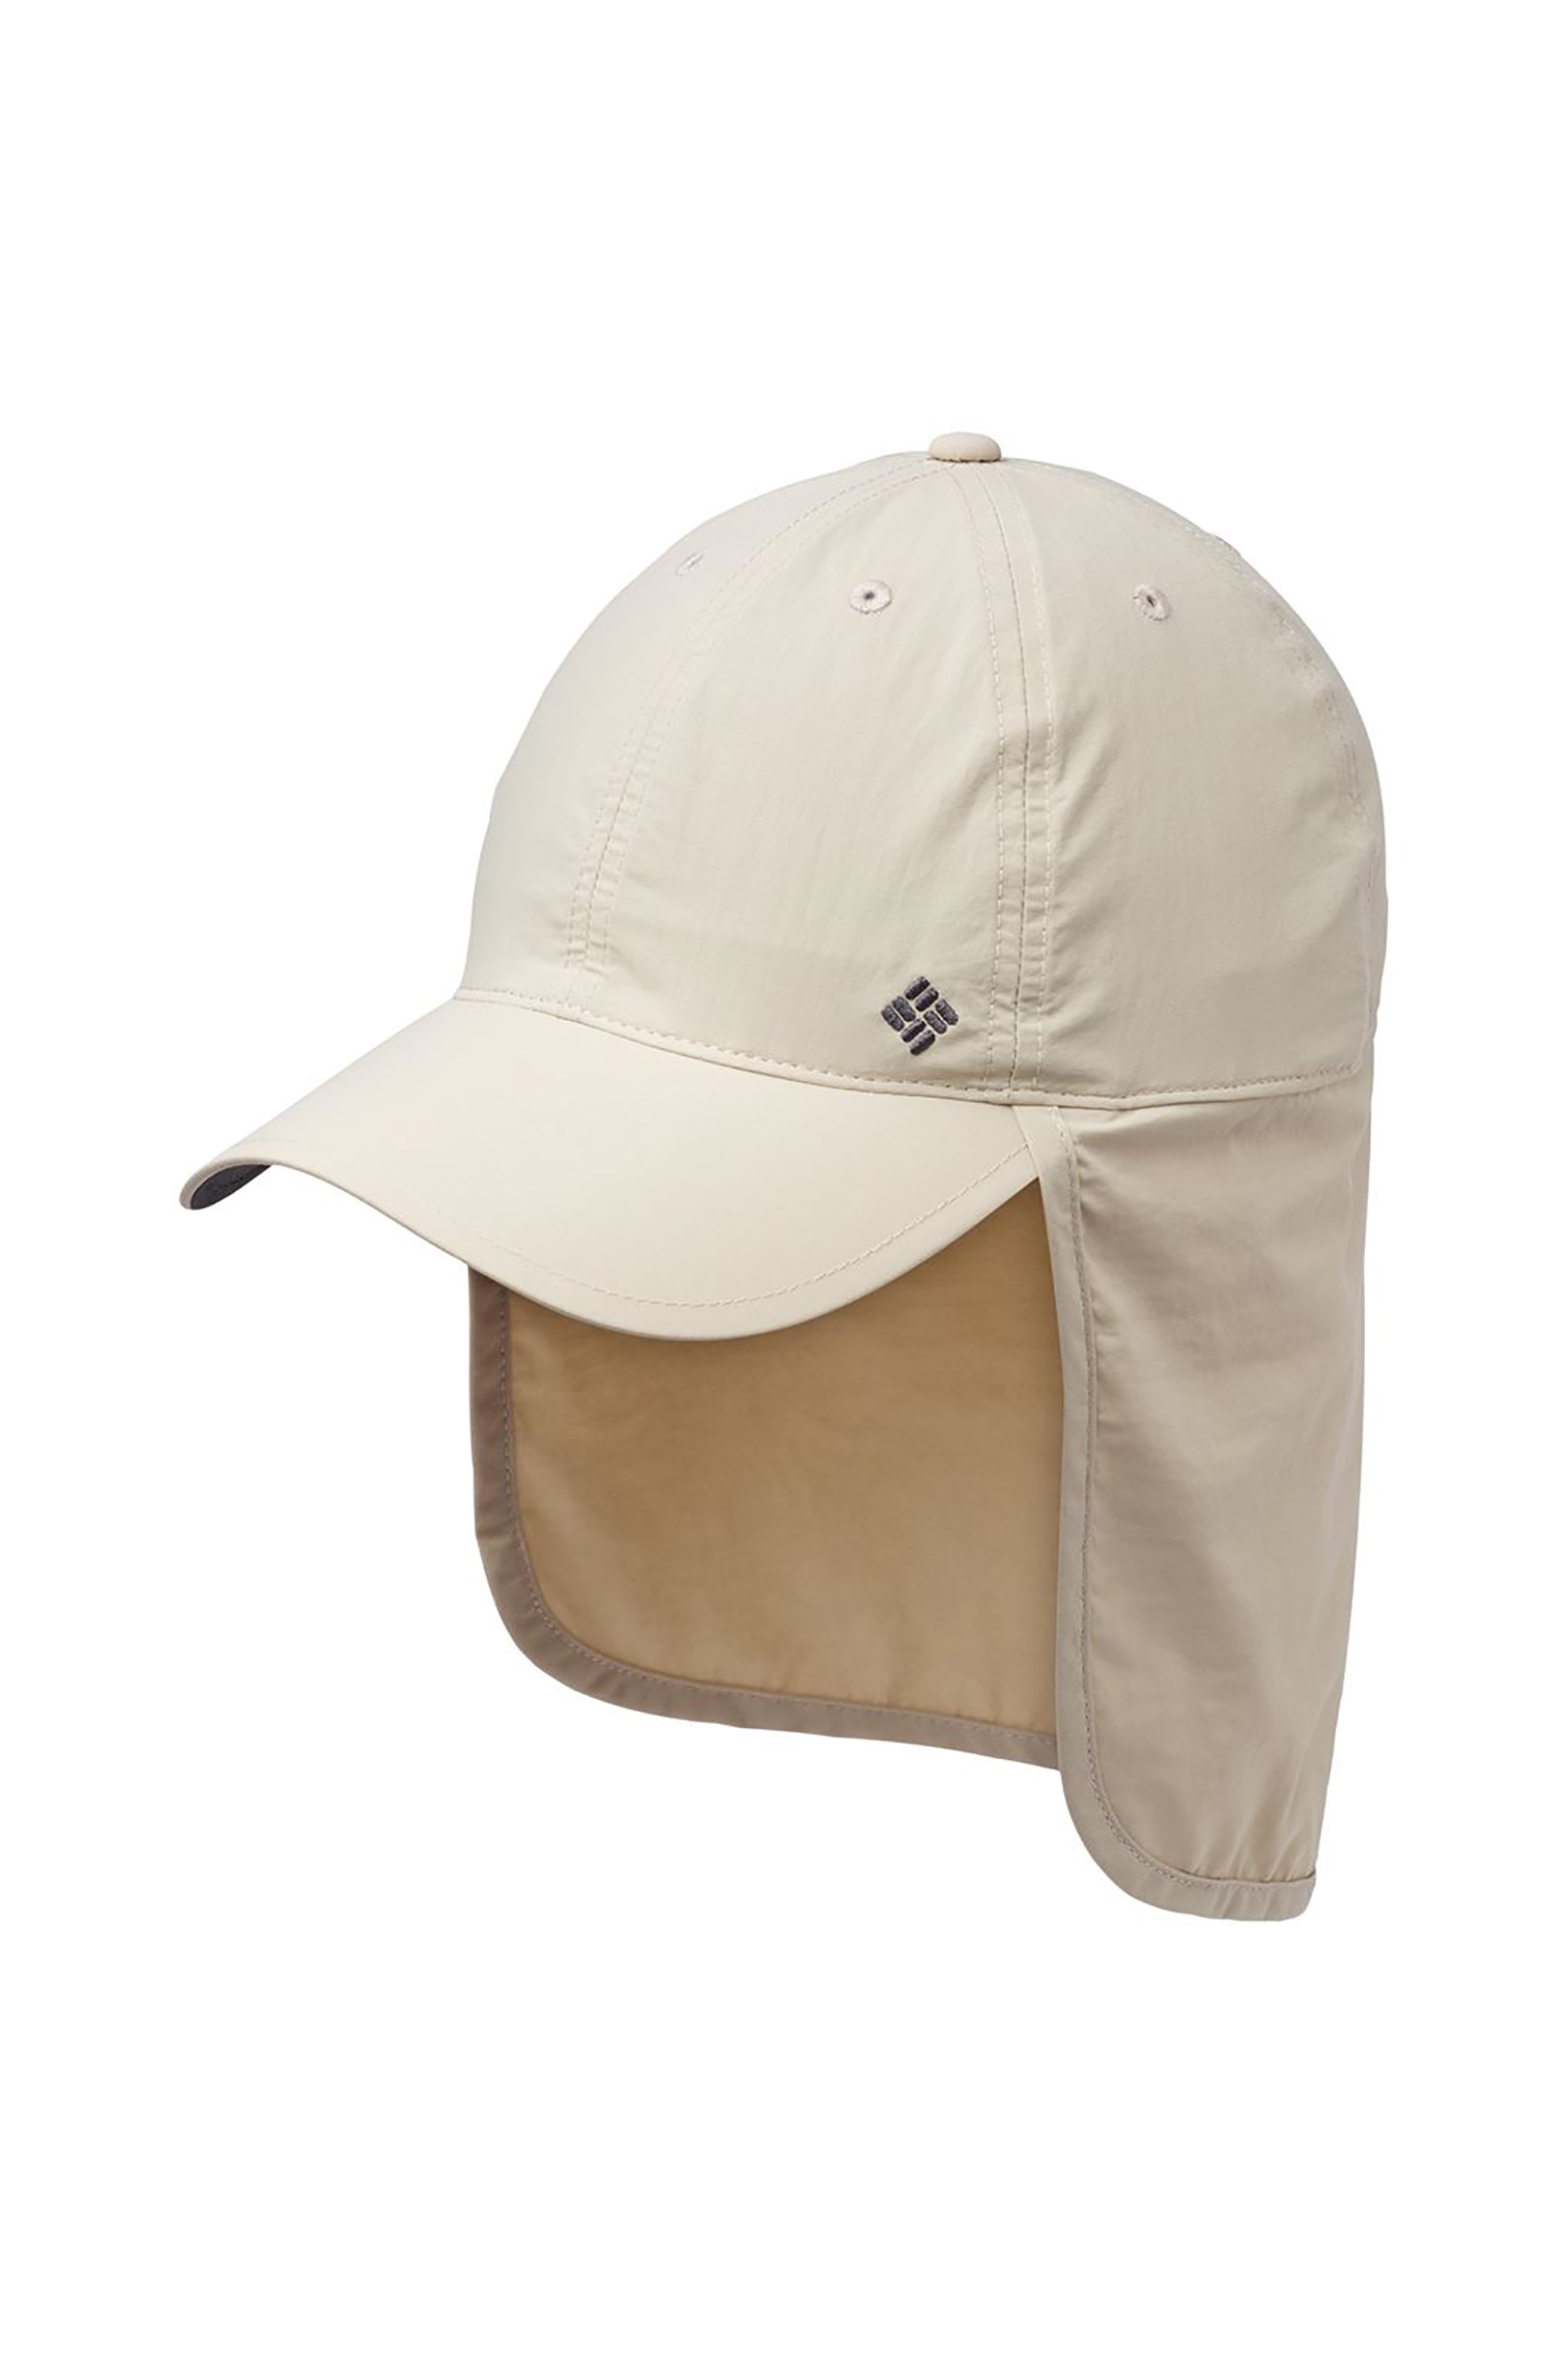 Ανδρική Μόδα > Ανδρικά Αξεσουάρ > Ανδρικά Καπέλα & Σκούφοι Columbia unisex καπέλο με κεντημένο logo ''Schooner Bank™'' - CU9108160TEM Μπεζ